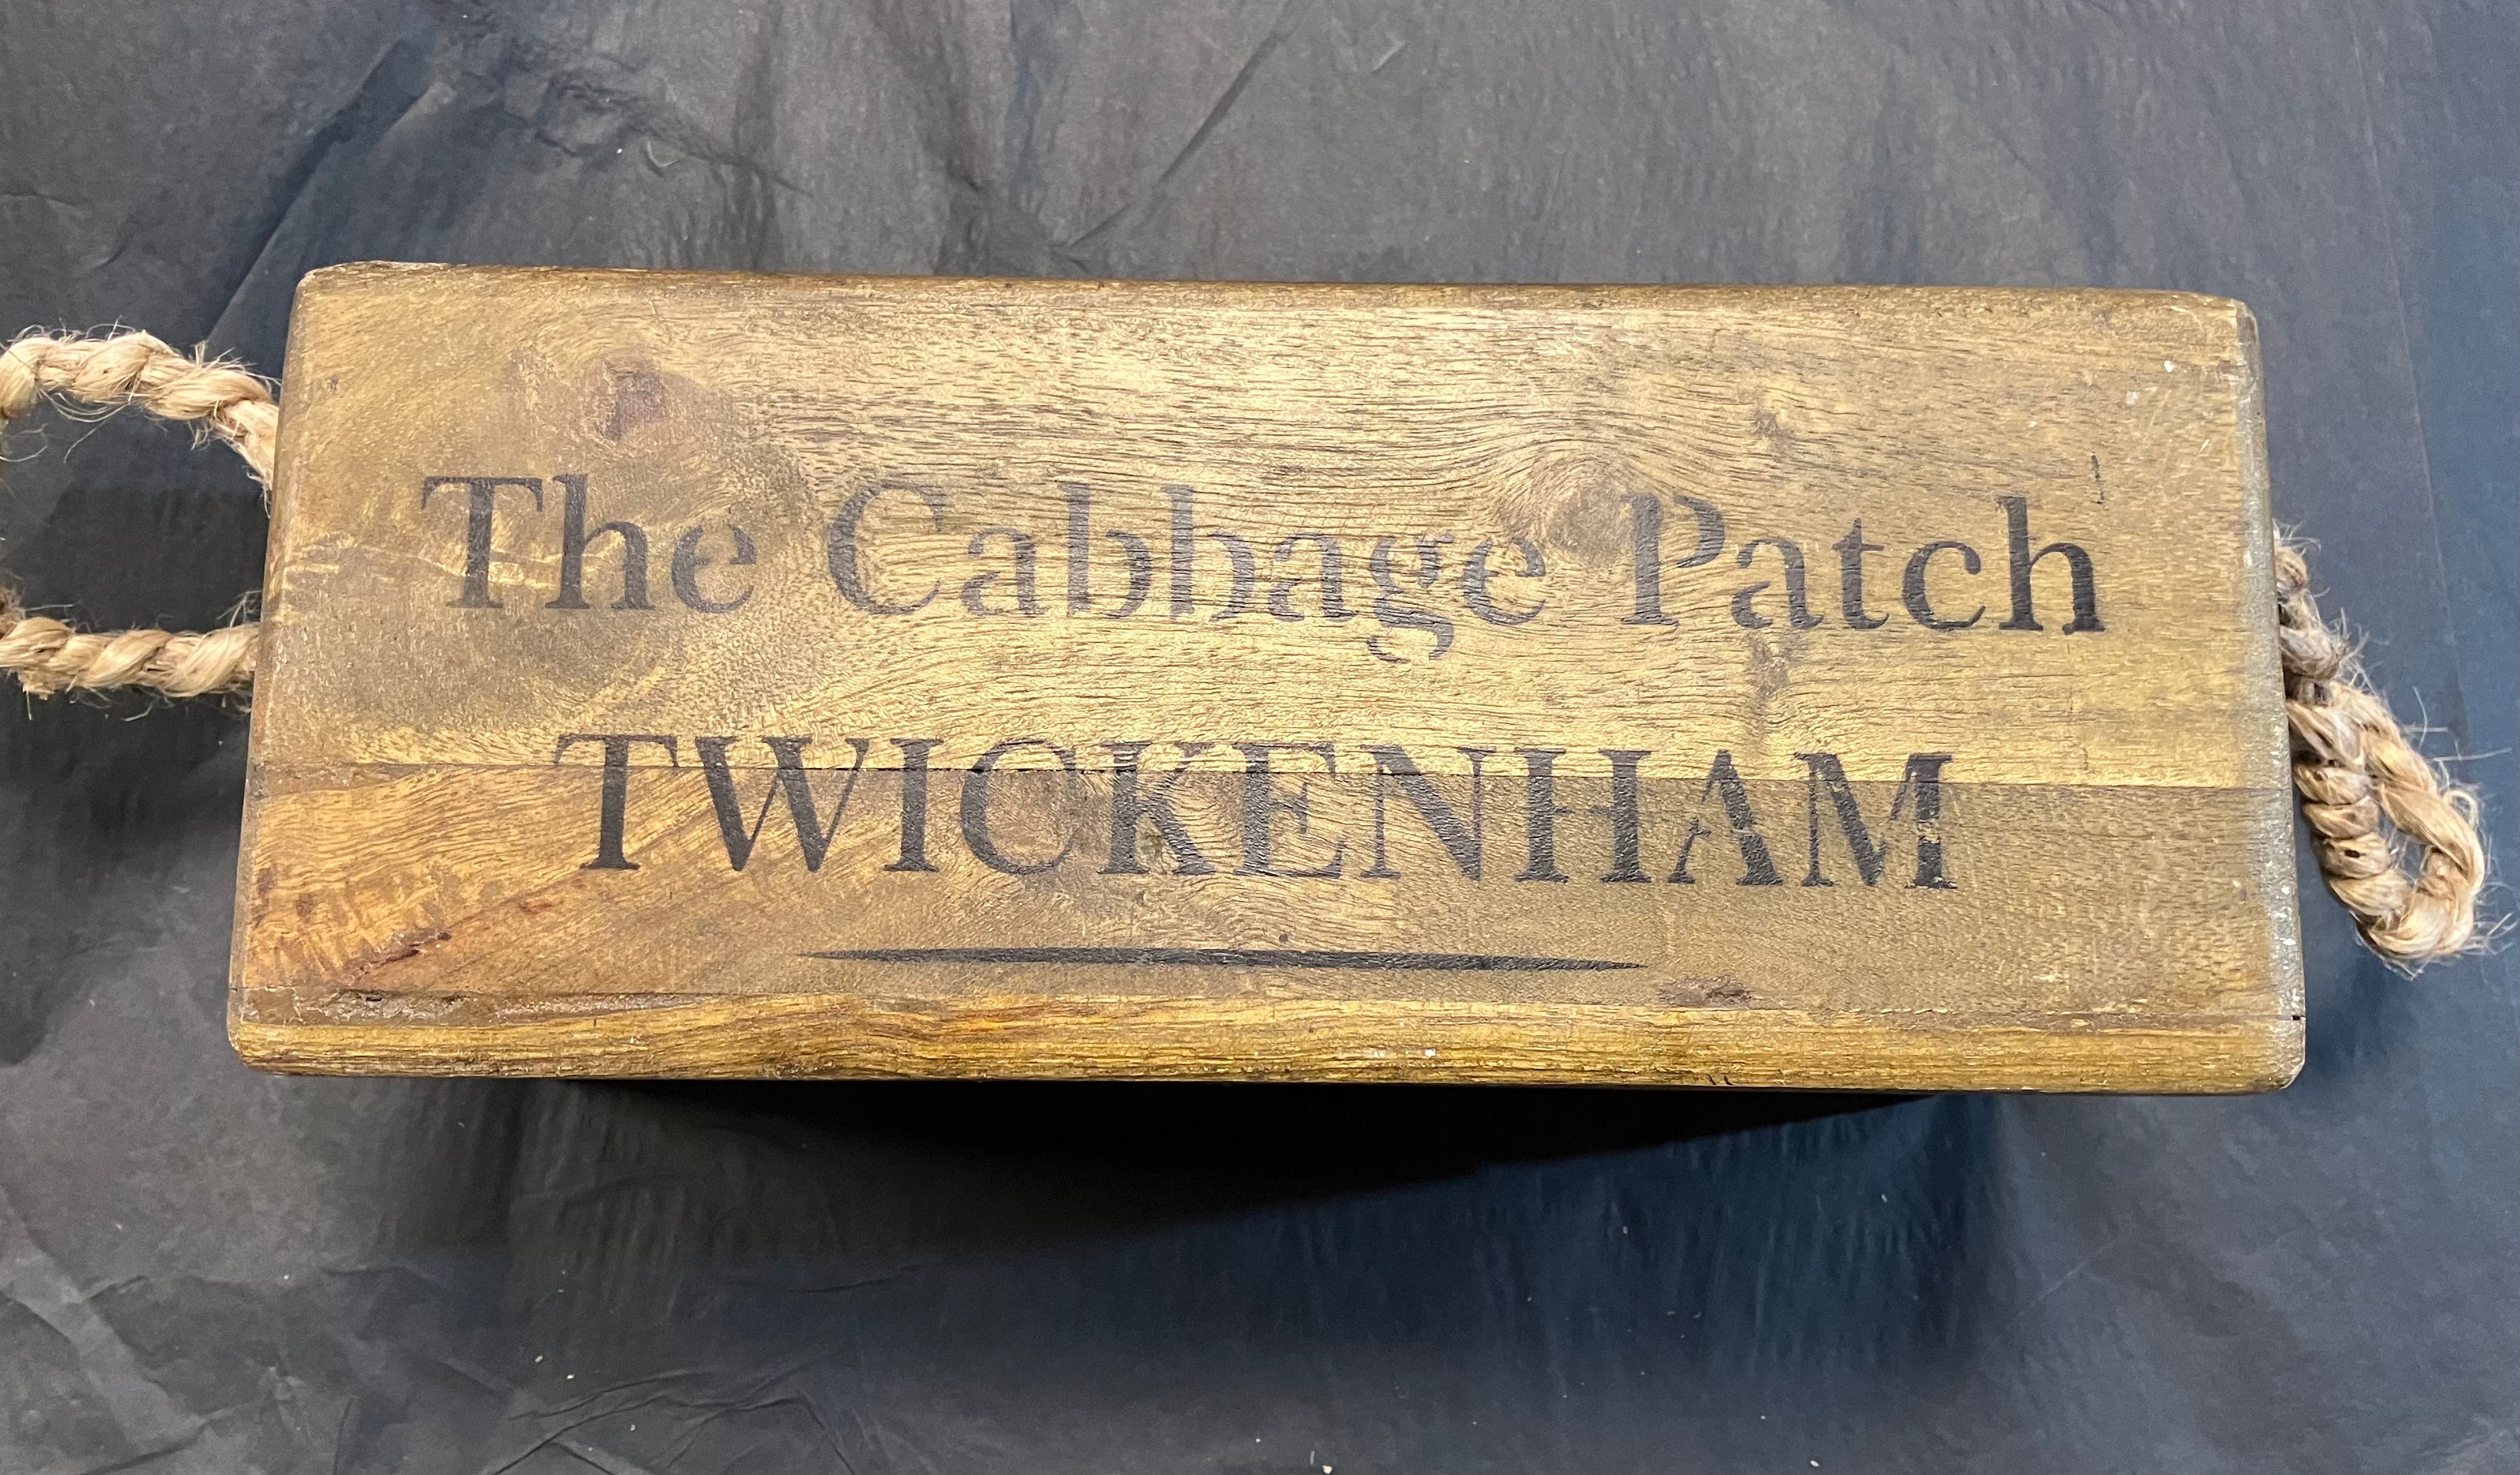 Cabbage Patch Twickenham wooden storage box